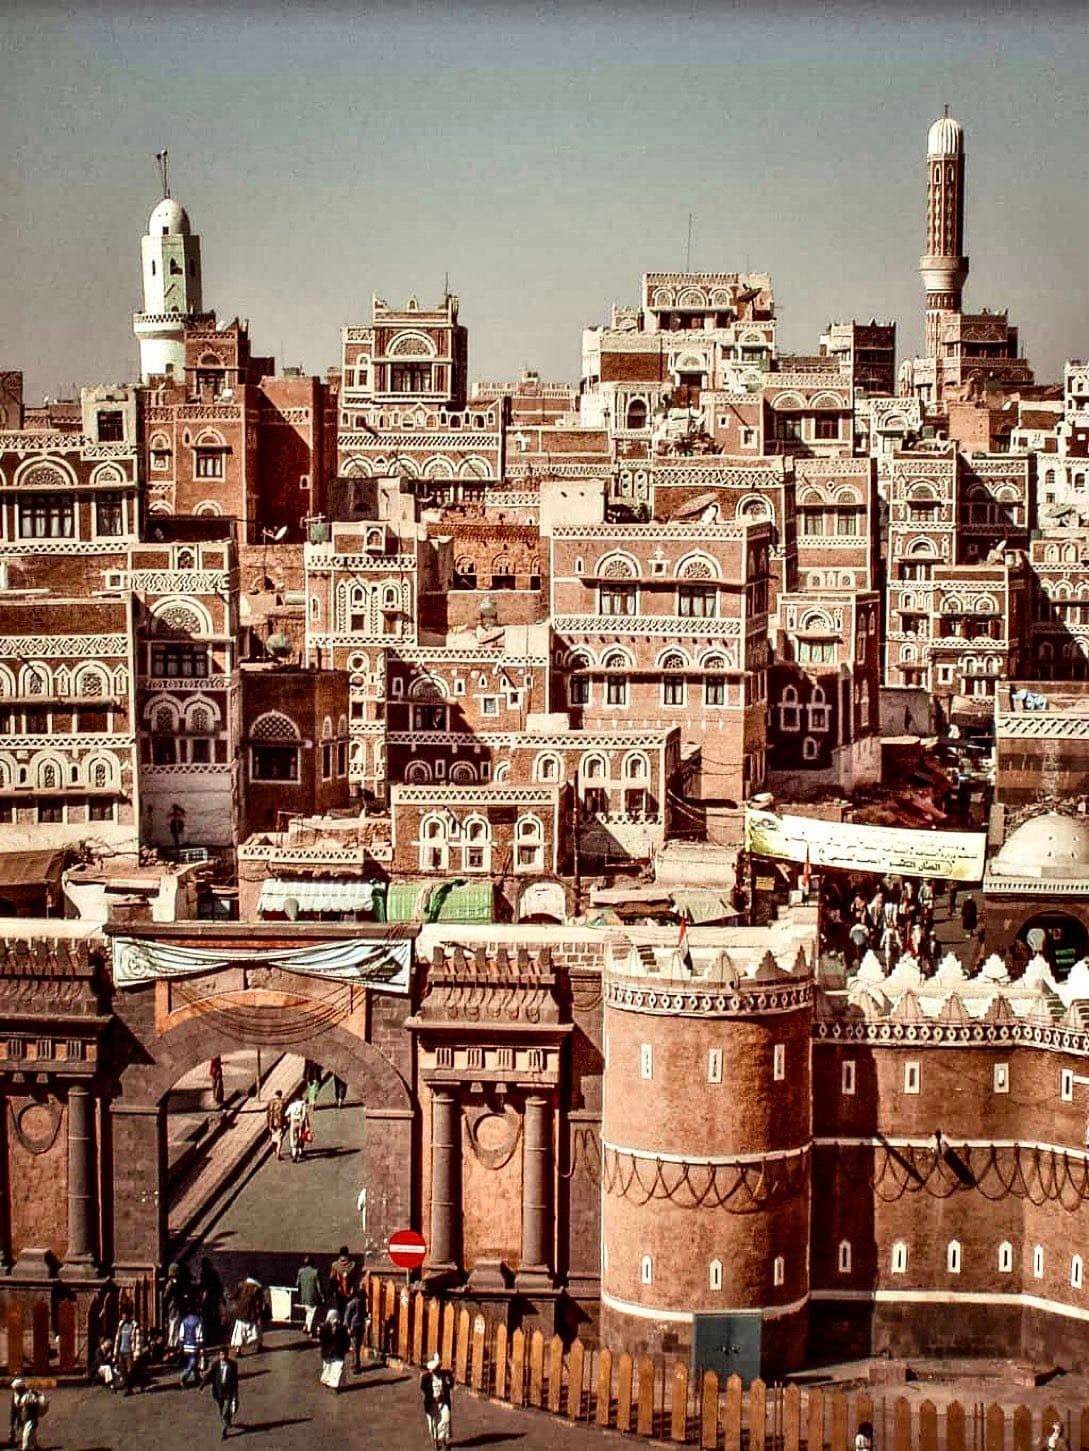 Panorama rumah-rumah yang indah di Timur Tengah. (Ilustrasi)